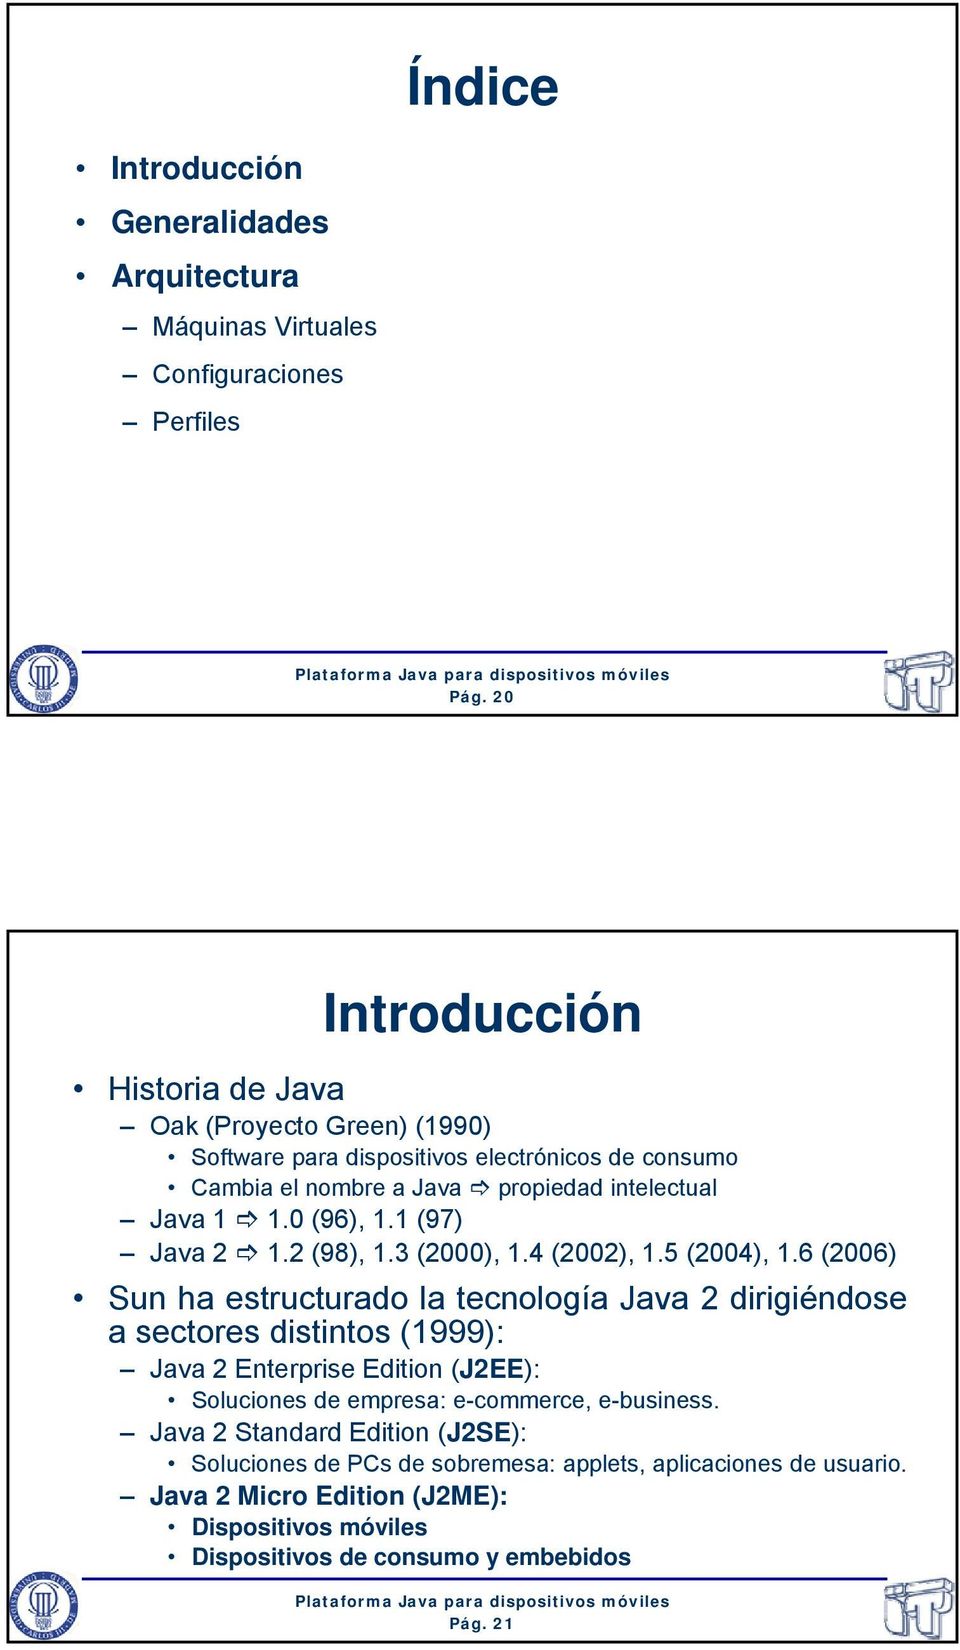 1 (97) Java 2 1.2 (98), 1.3 (2000), 1.4 (2002), 1.5 (2004), 1.